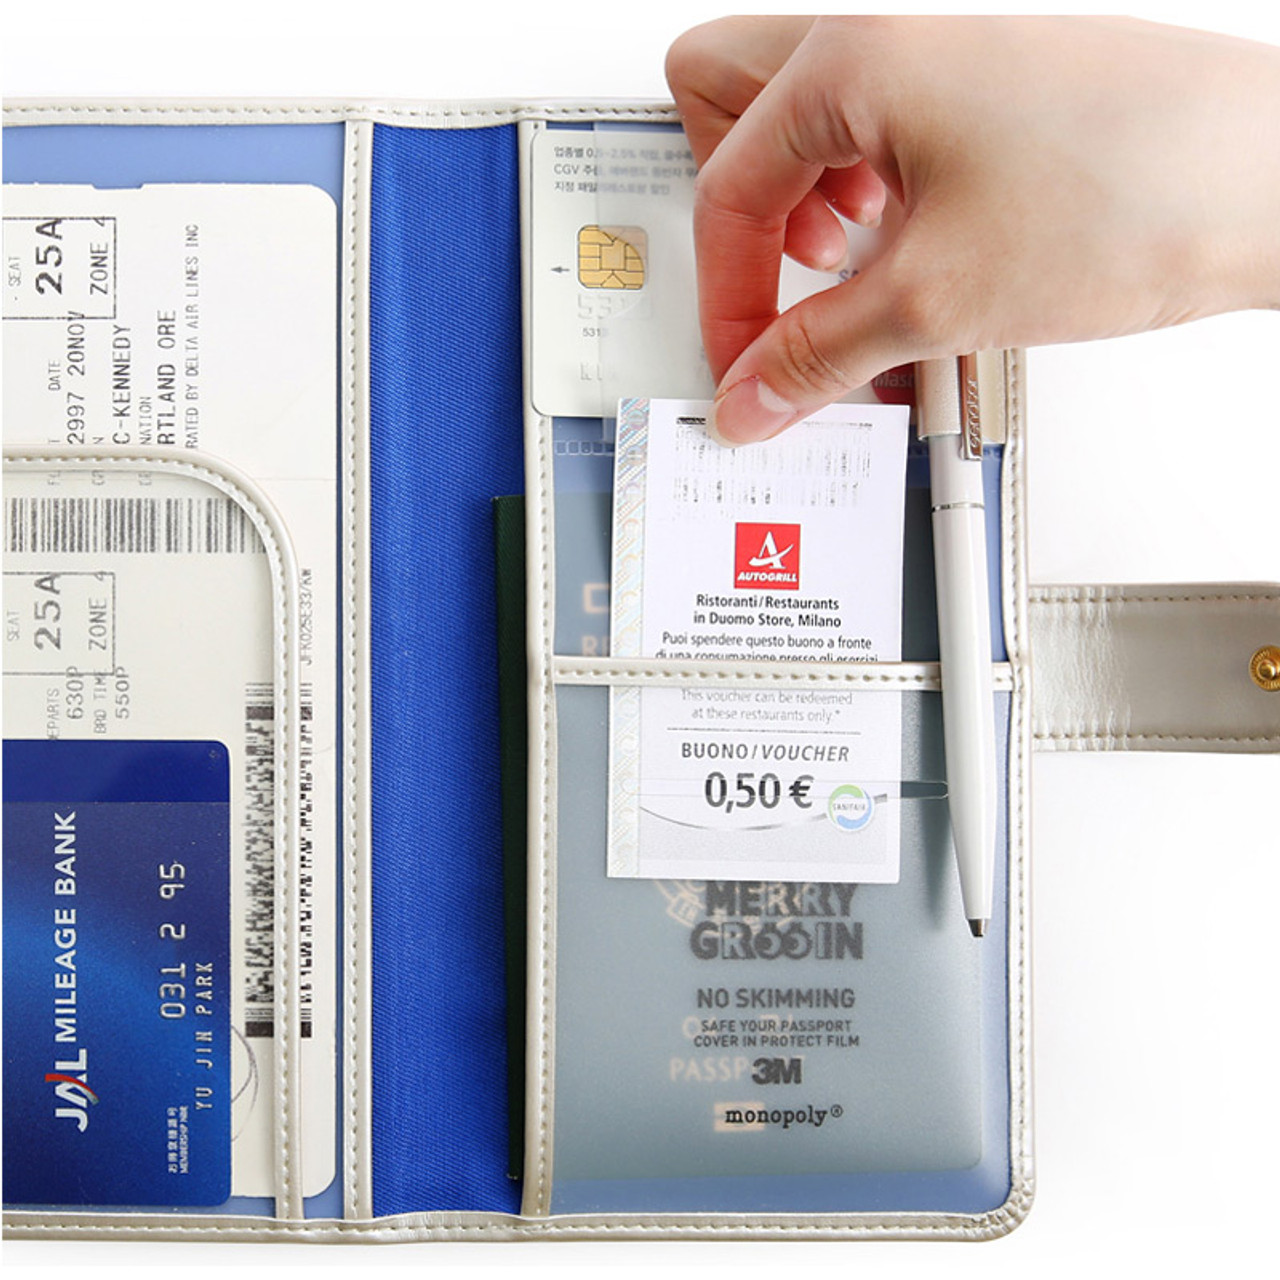 Monopoly Merrygrin RFID blocking long passport case - fallindesign